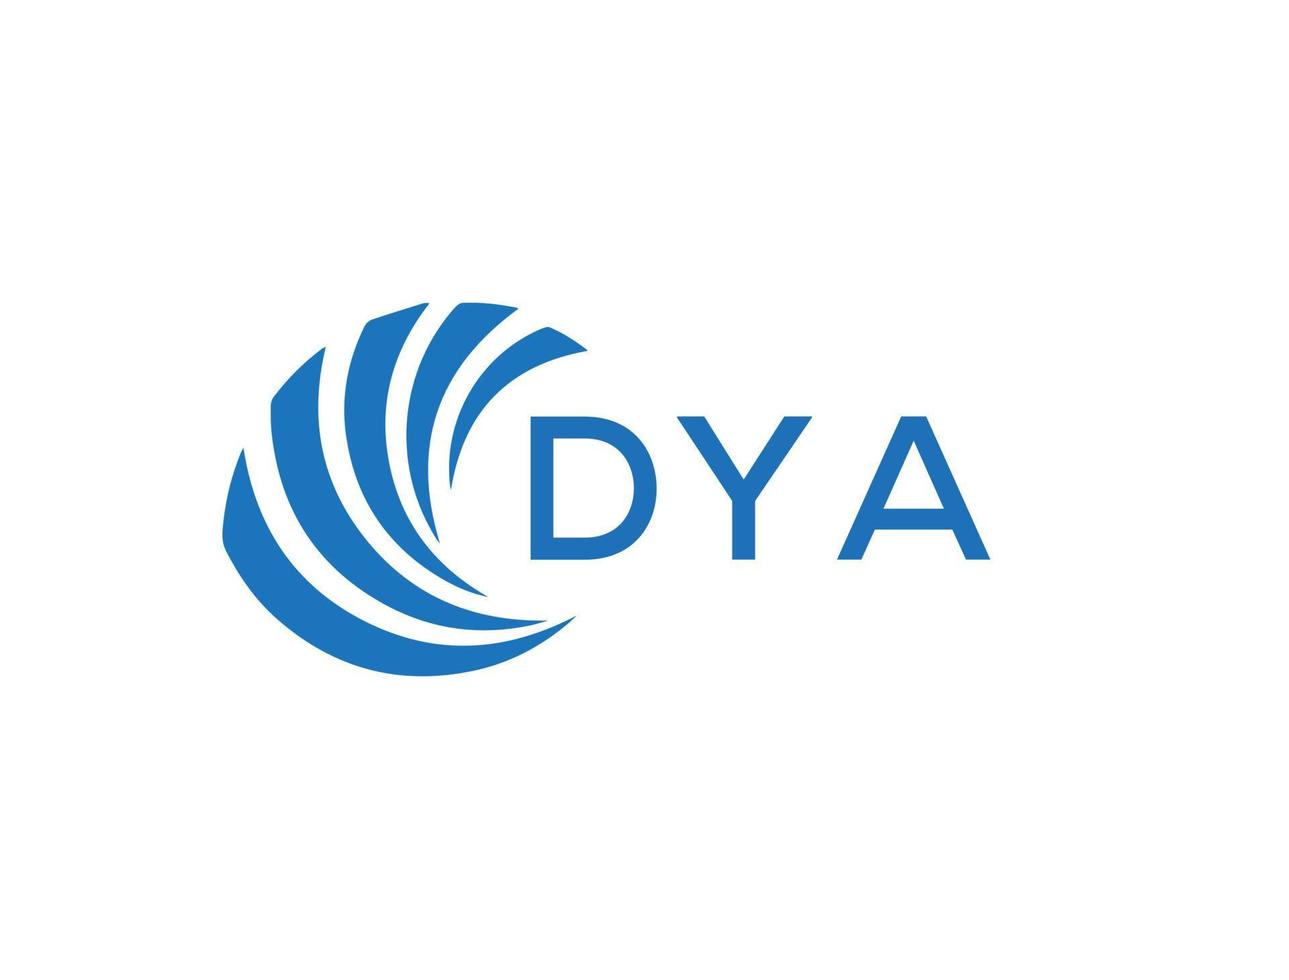 DYA letter logo design on white background. DYA creative circle letter logo concept. DYA letter design. vector